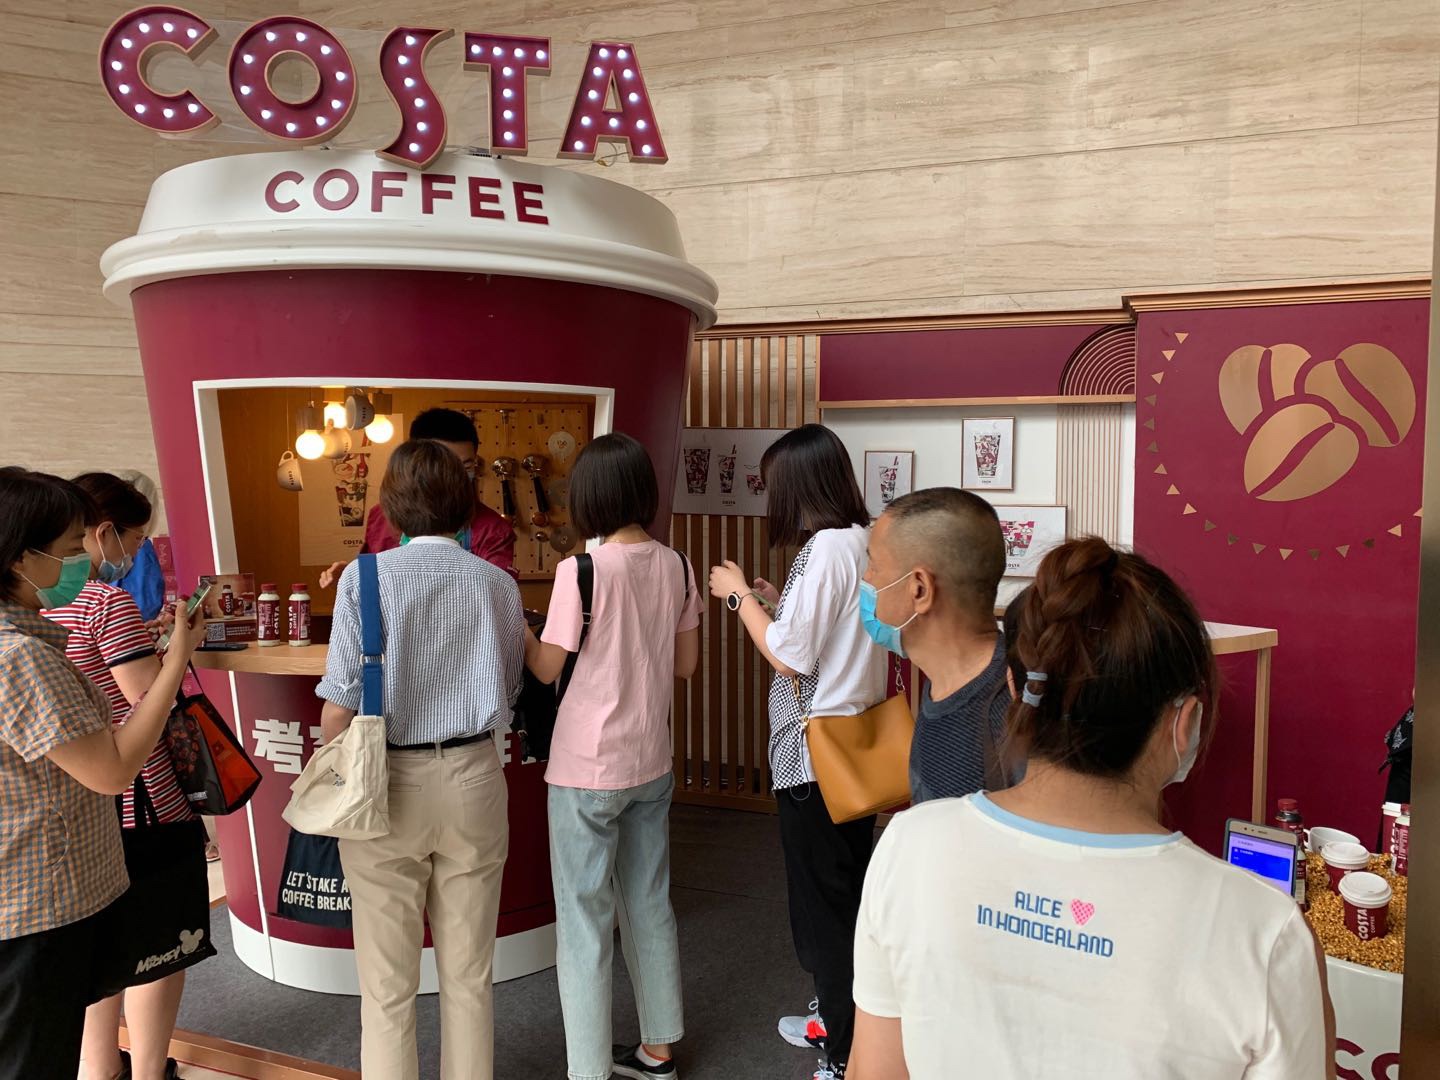 Costa咖啡派送快闪活动-天津天星河畔广场